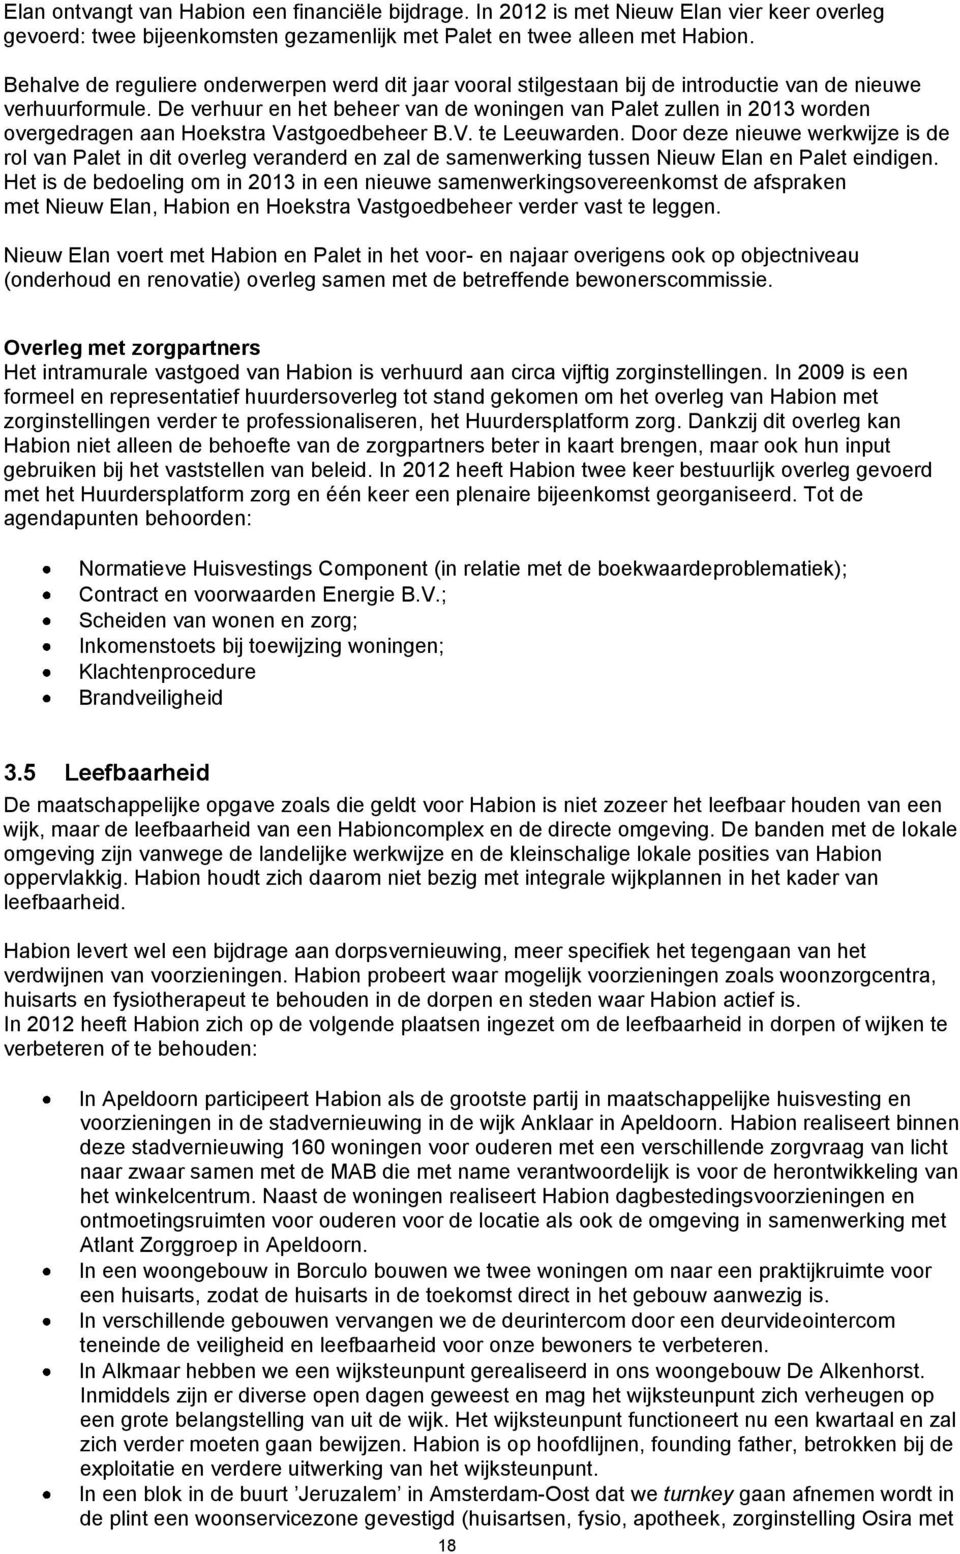 De verhuur en het beheer van de woningen van Palet zullen in 2013 worden overgedragen aan Hoekstra Vastgoedbeheer B.V. te Leeuwarden.